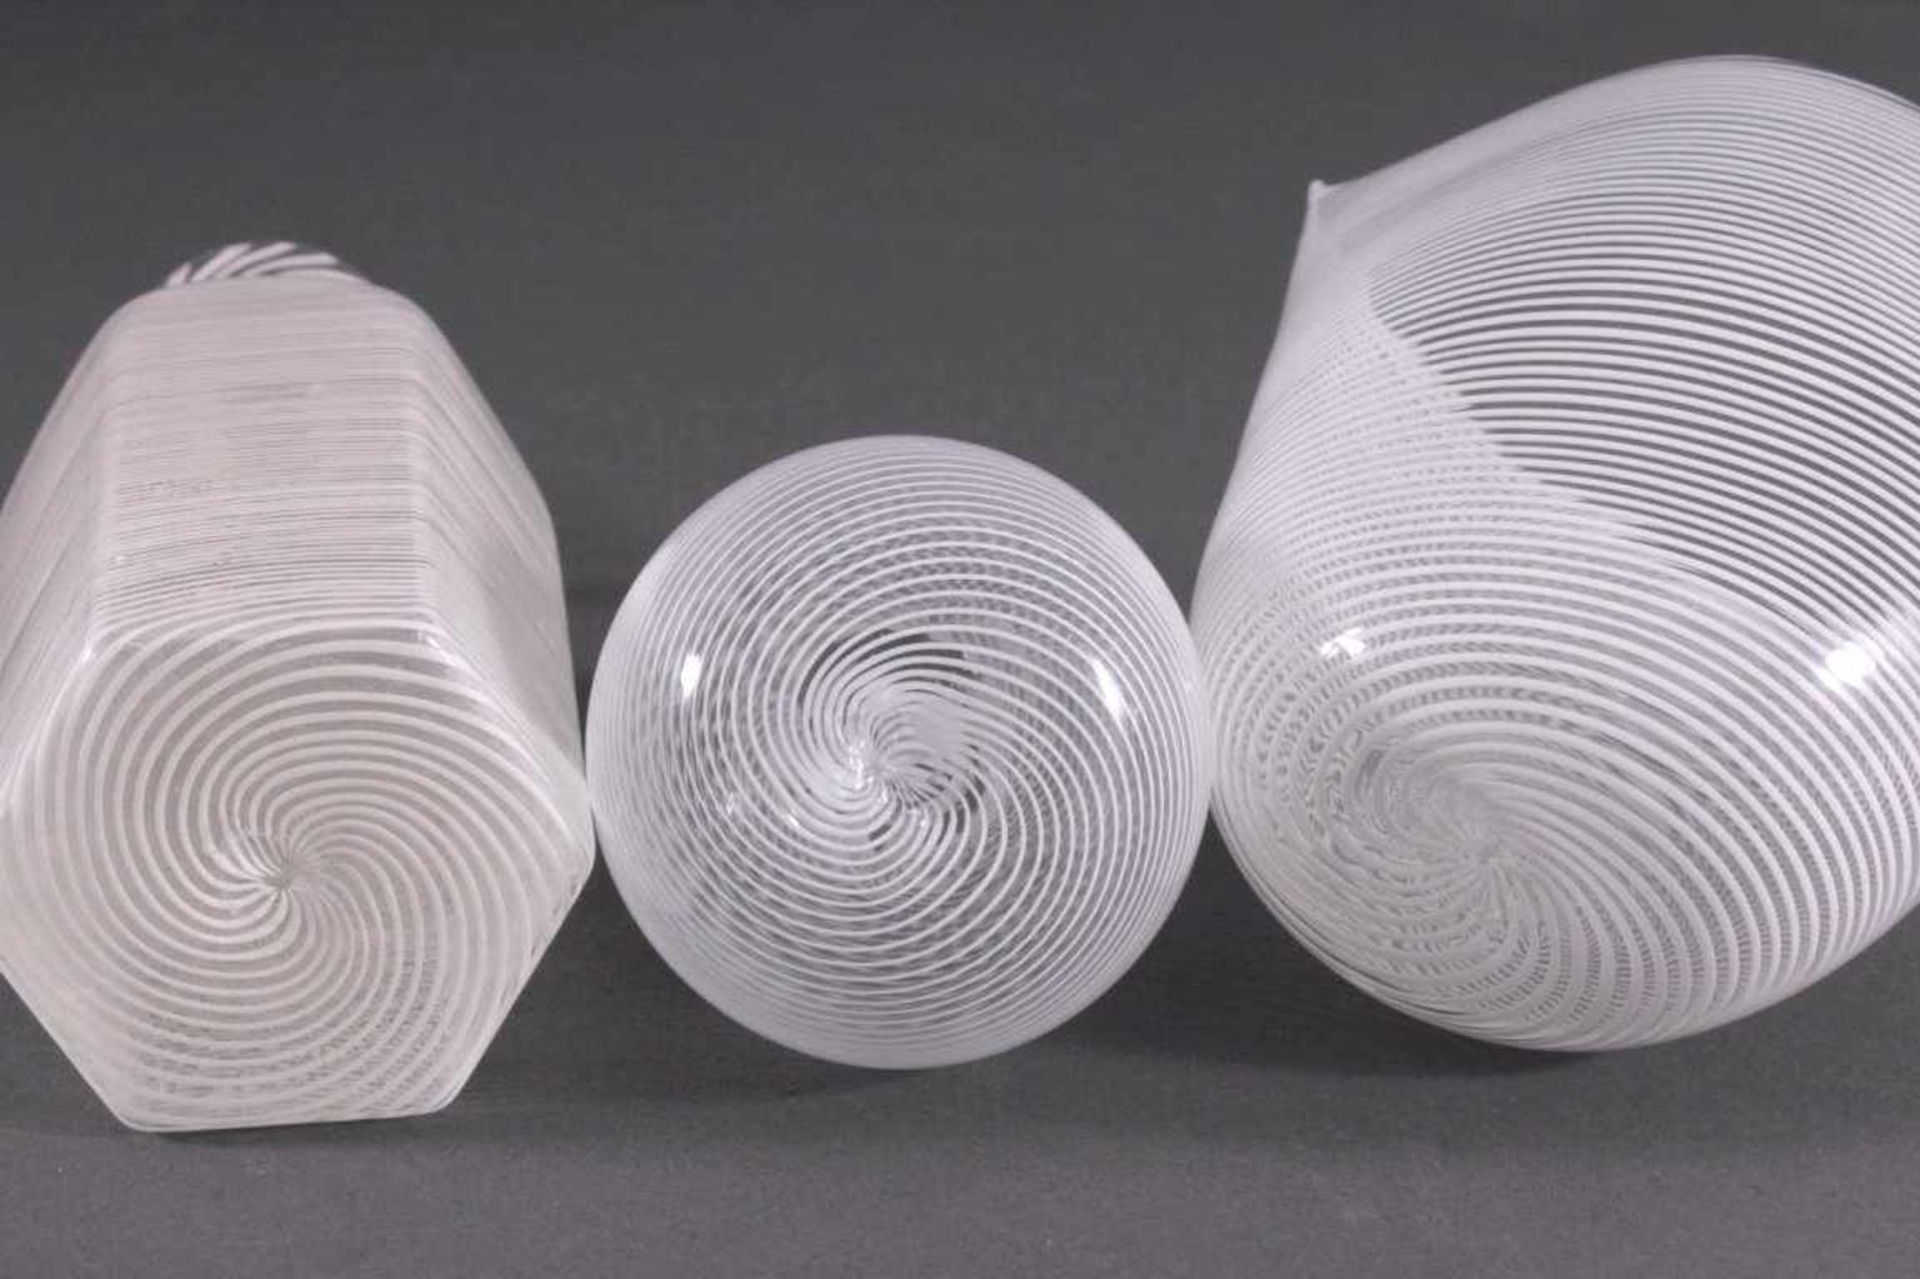 Drei Glas-Objekte, ItalienFarbloses Glas mit feingliedriger spiralförmig- - Bild 2 aus 3